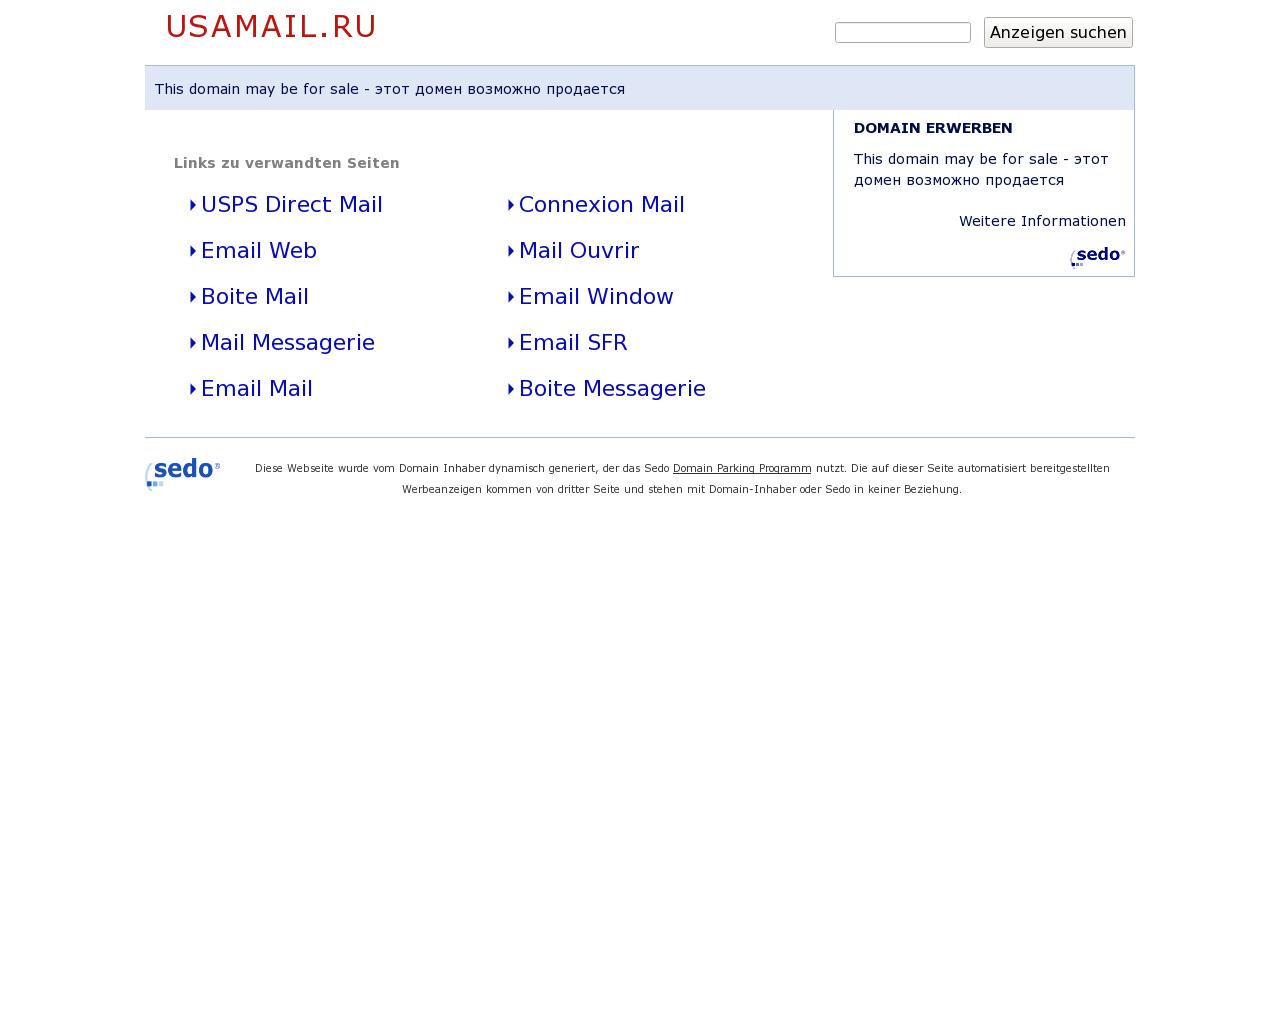 Изображение сайта usamail.ru в разрешении 1280x1024